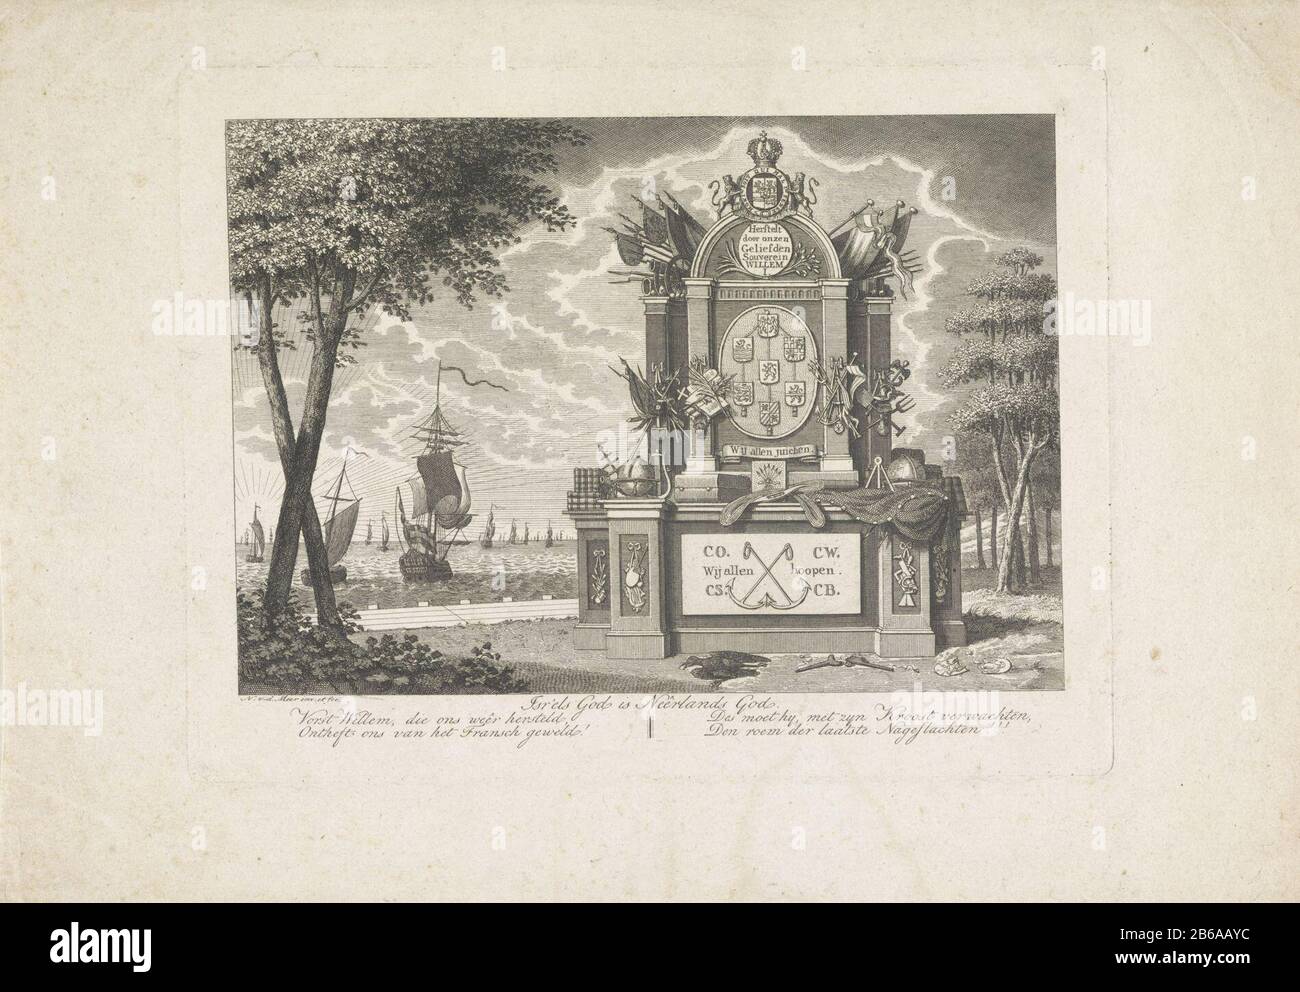 Alegoría de la liberación de los países Bajos, la caída de los franceses y la restauración del príncipe de Orange como príncipe 1813. Paisaje con monumento las provincias